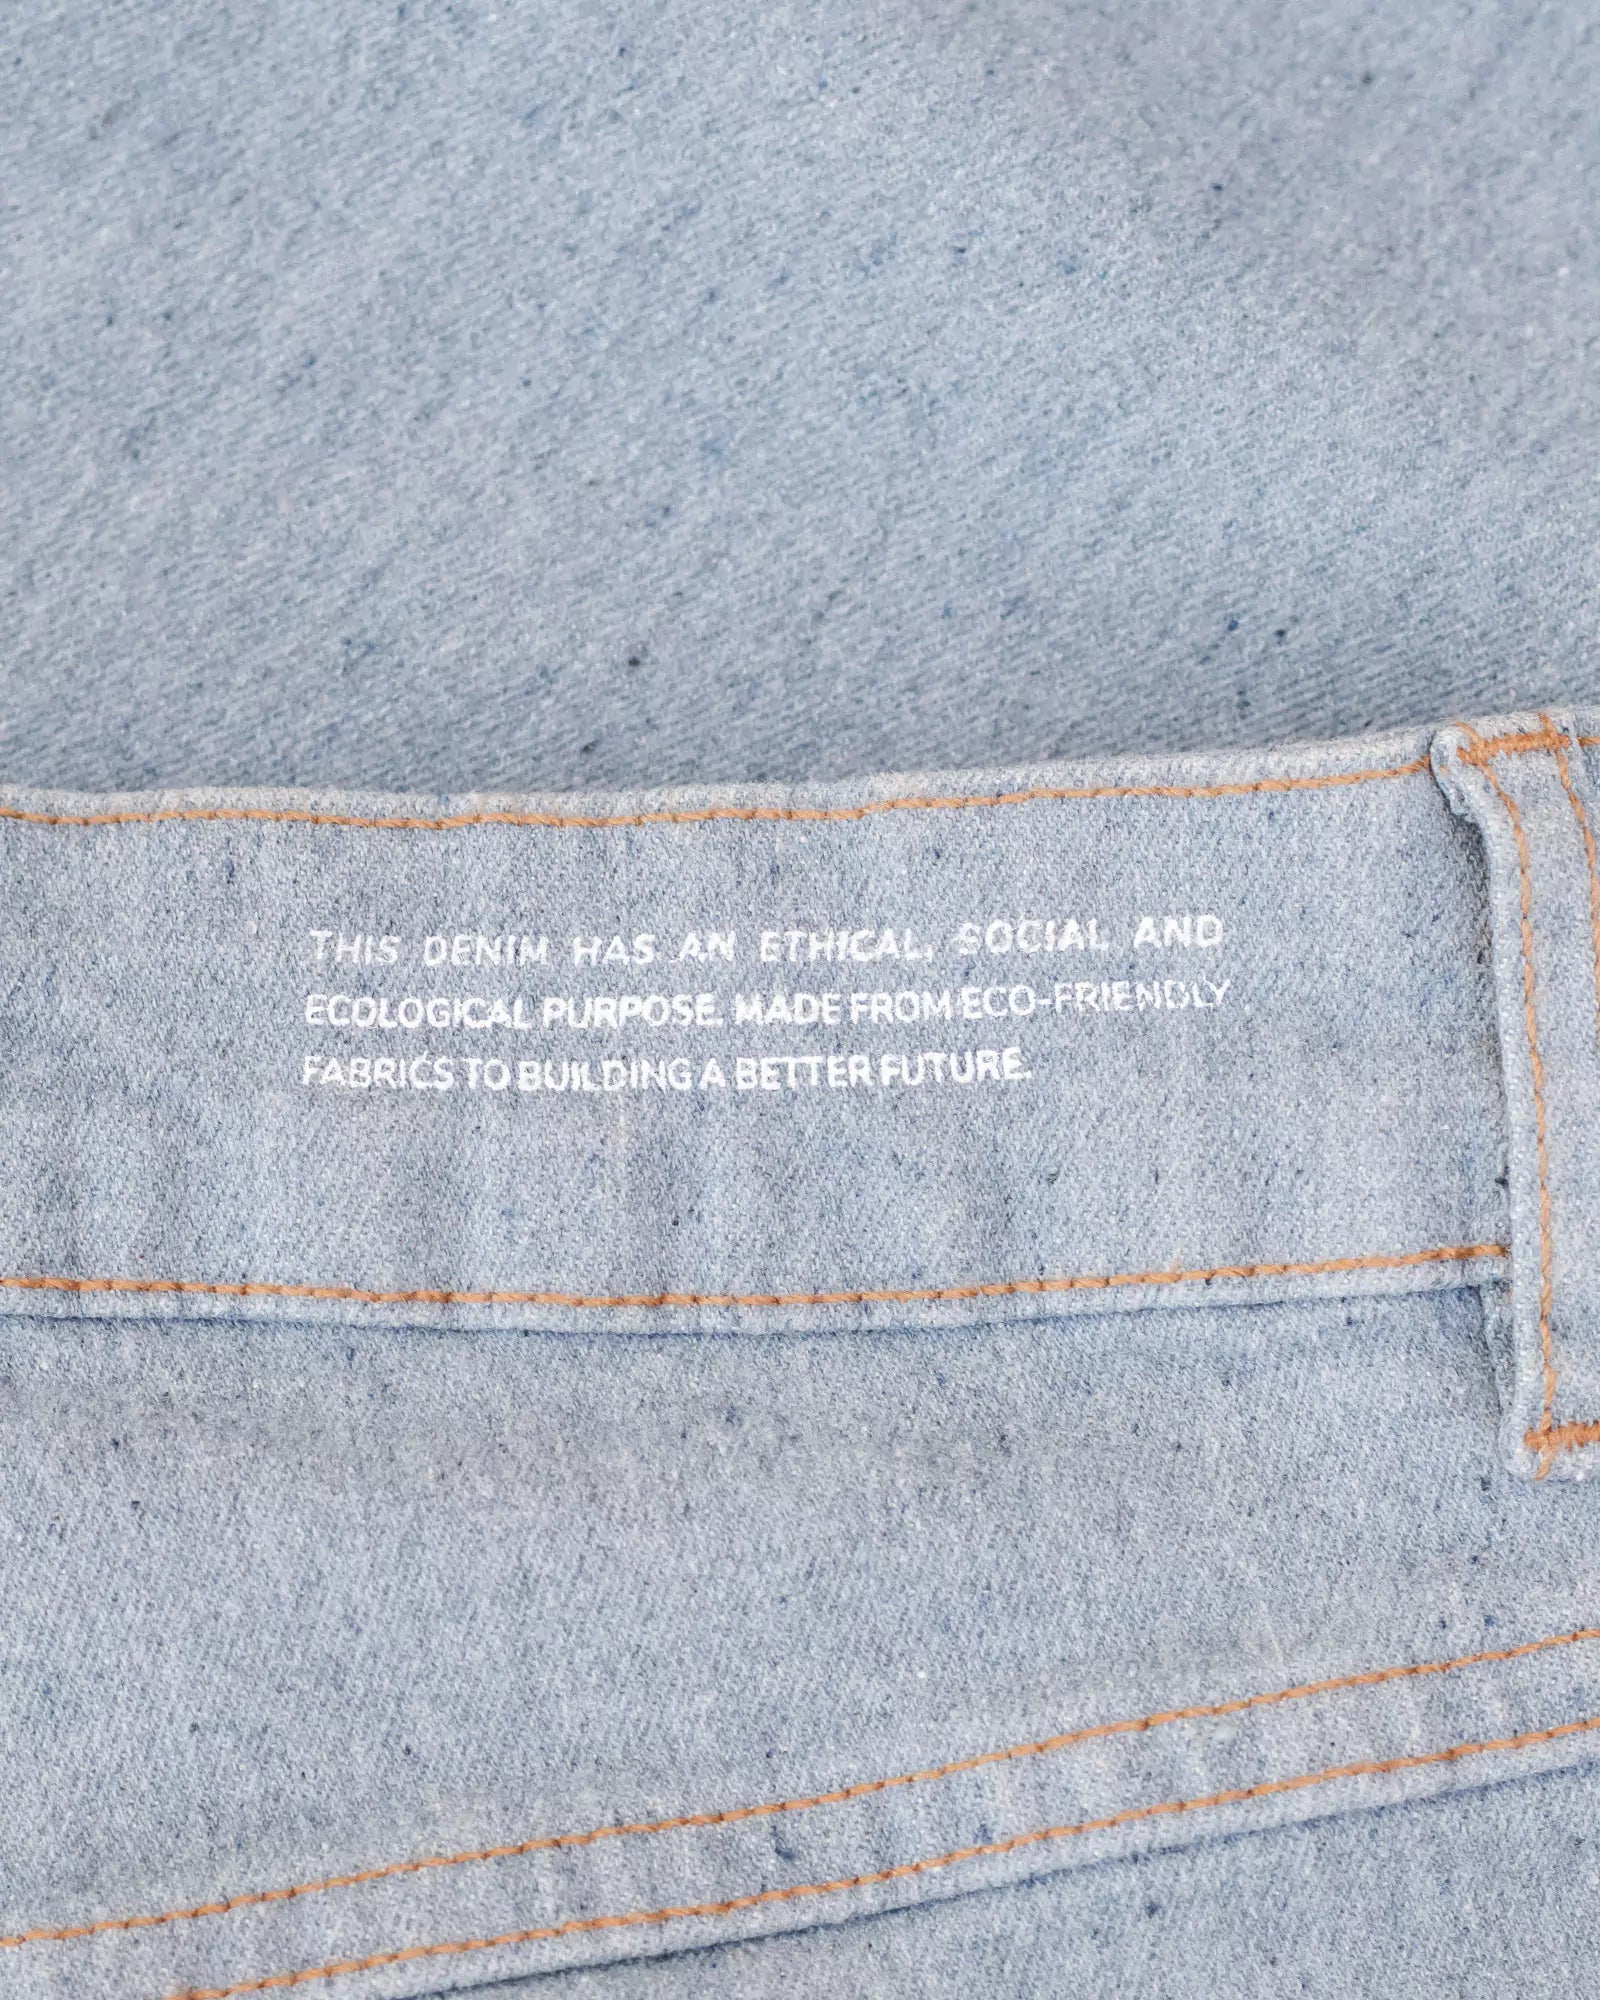 Calça Skinny Jeans Azul Claro Eco Denim™. Compre online moda sustentável e atemporal na Minimadeia. Roupas femininas estilosas, básicas e sustentáveis. Foto produto destaque